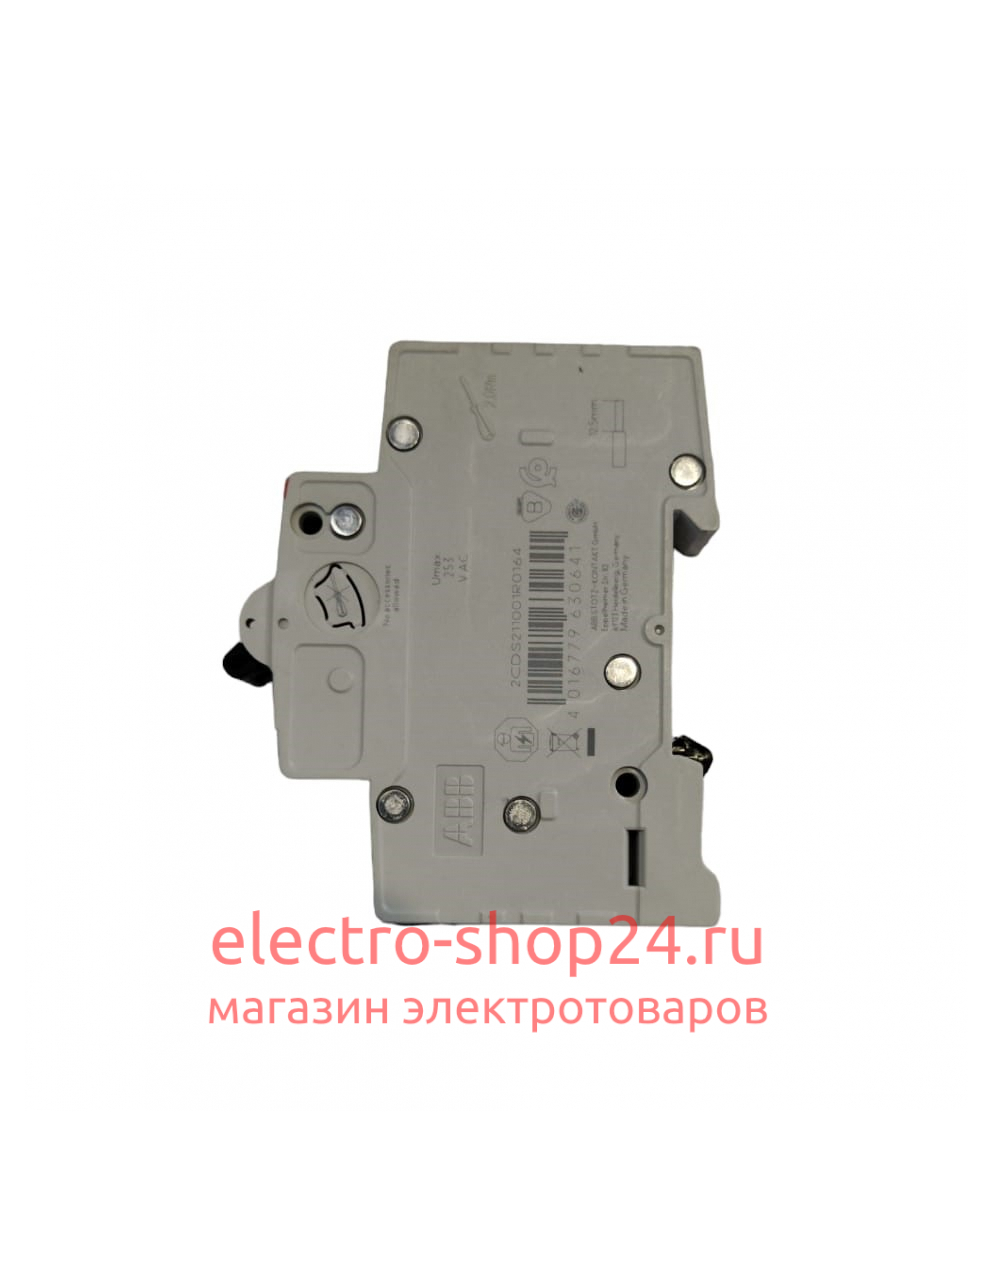 SH201 C16 Автоматический выключатель 1-полюсный 16А 6кА (хар-ка C) ABB 2CDS211001R0164 2CDS211001R0164 - магазин электротехники Electroshop